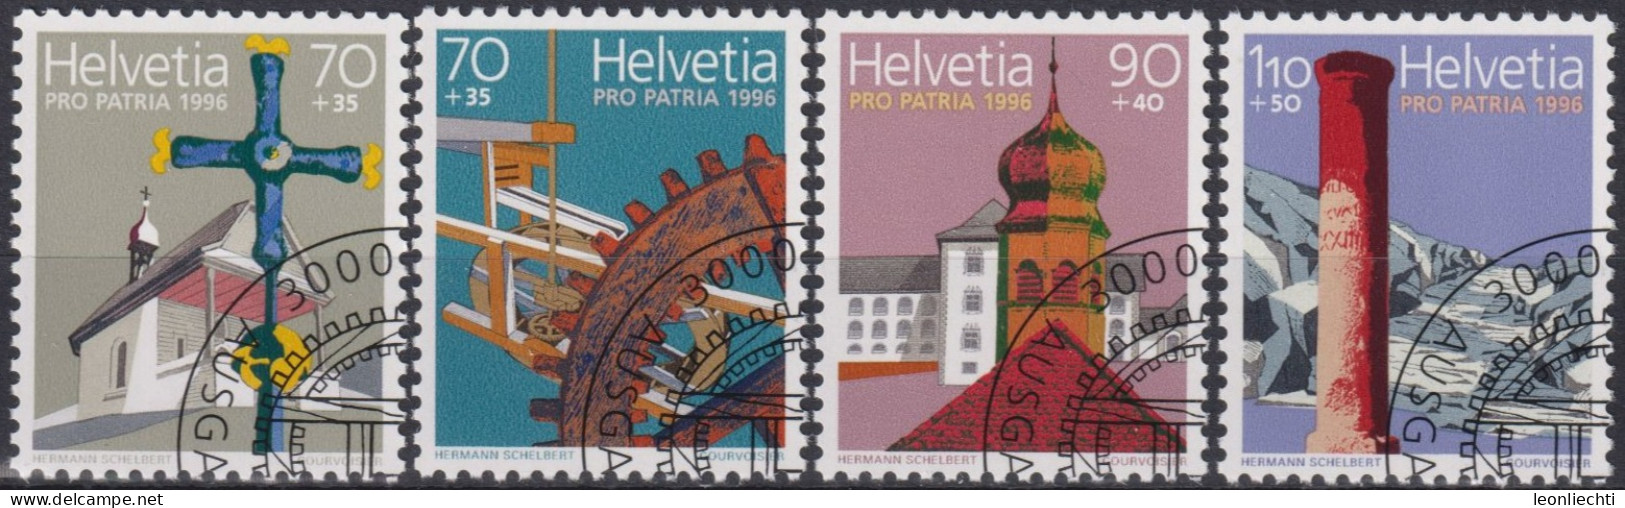 1996 Schweiz Pro Patria, Kulturrgüter U. Landschaften, ⵙ Zum:CH B251-254, Mi:CH 1577-1580, Yt: CH 1505-1508 - Gebraucht